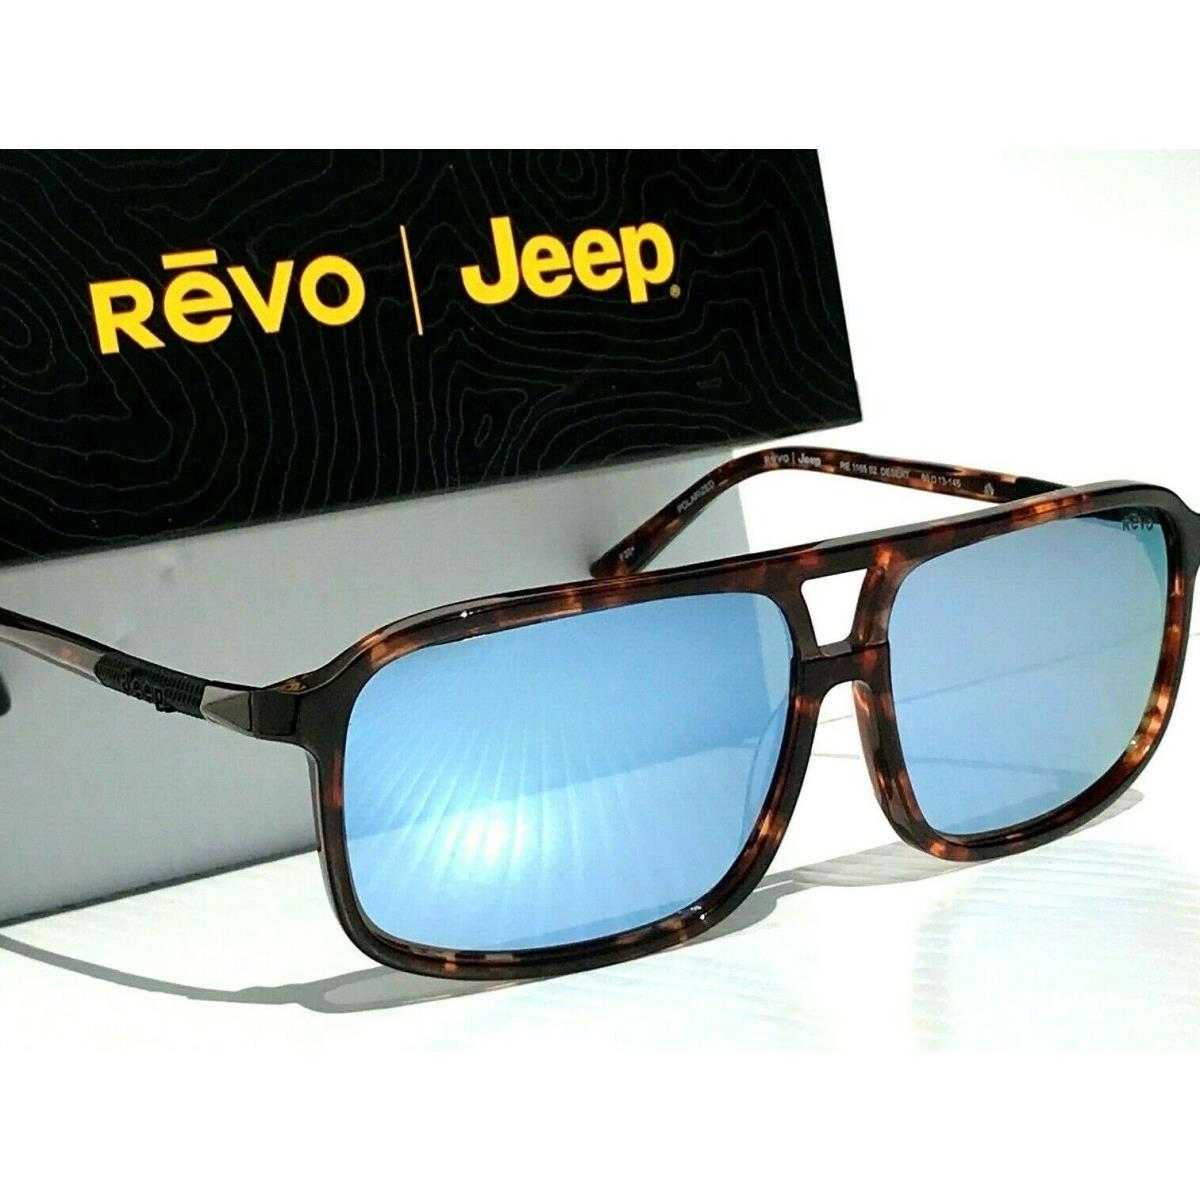 Revo sunglasses JEEP Desert - Brown Frame, Blue Lens